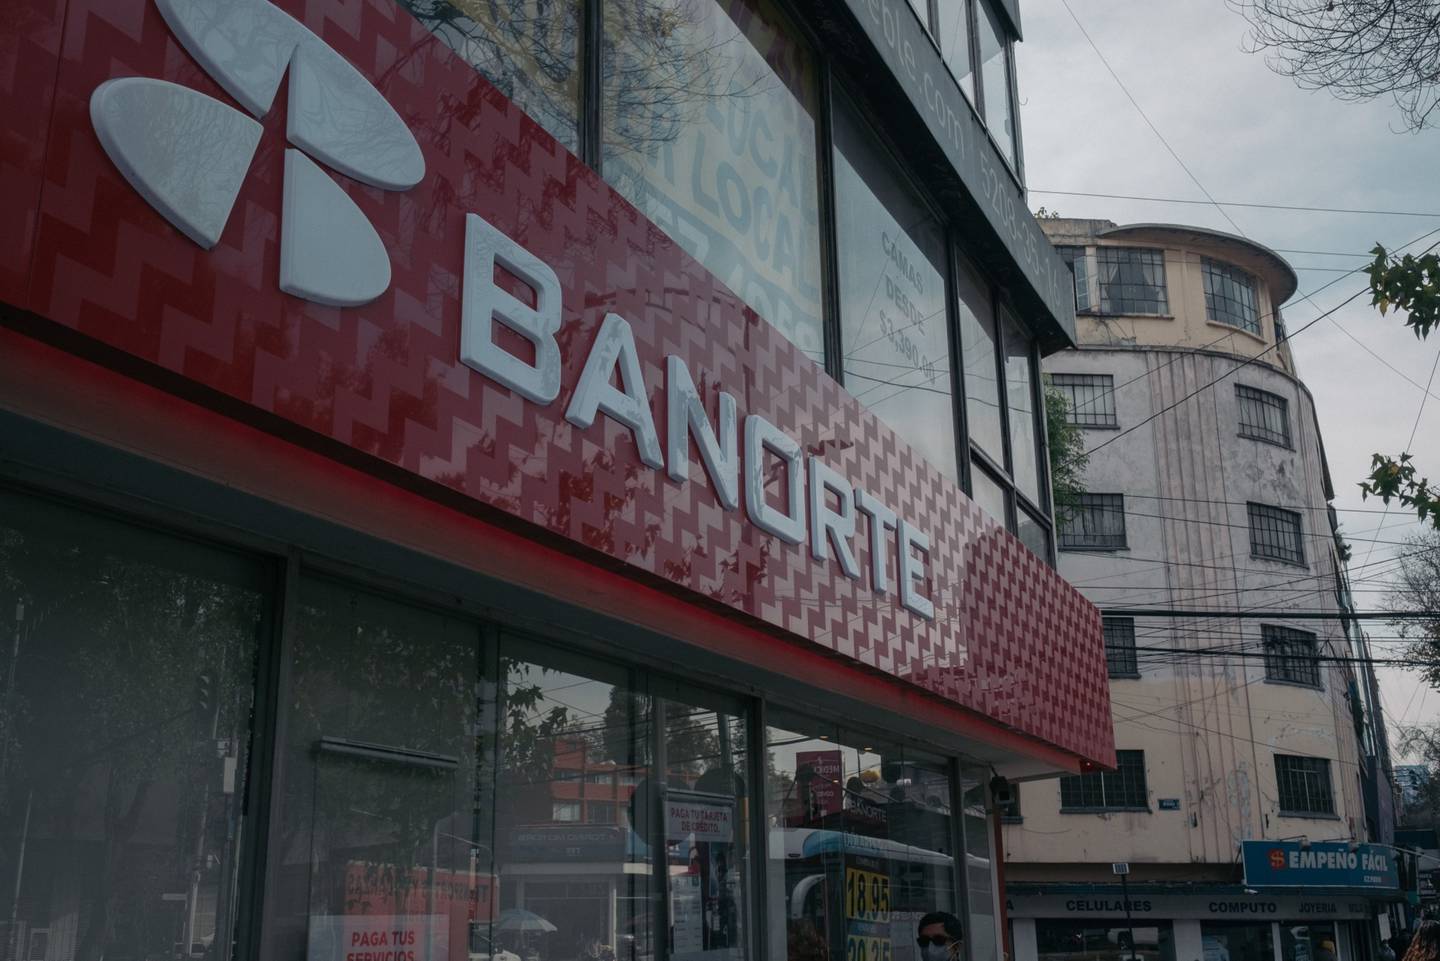 Tanto Banorte como Regional ofrecen el mejor crecimiento de utilidades, altos dividendos, y cuentan con banca digital avanzada